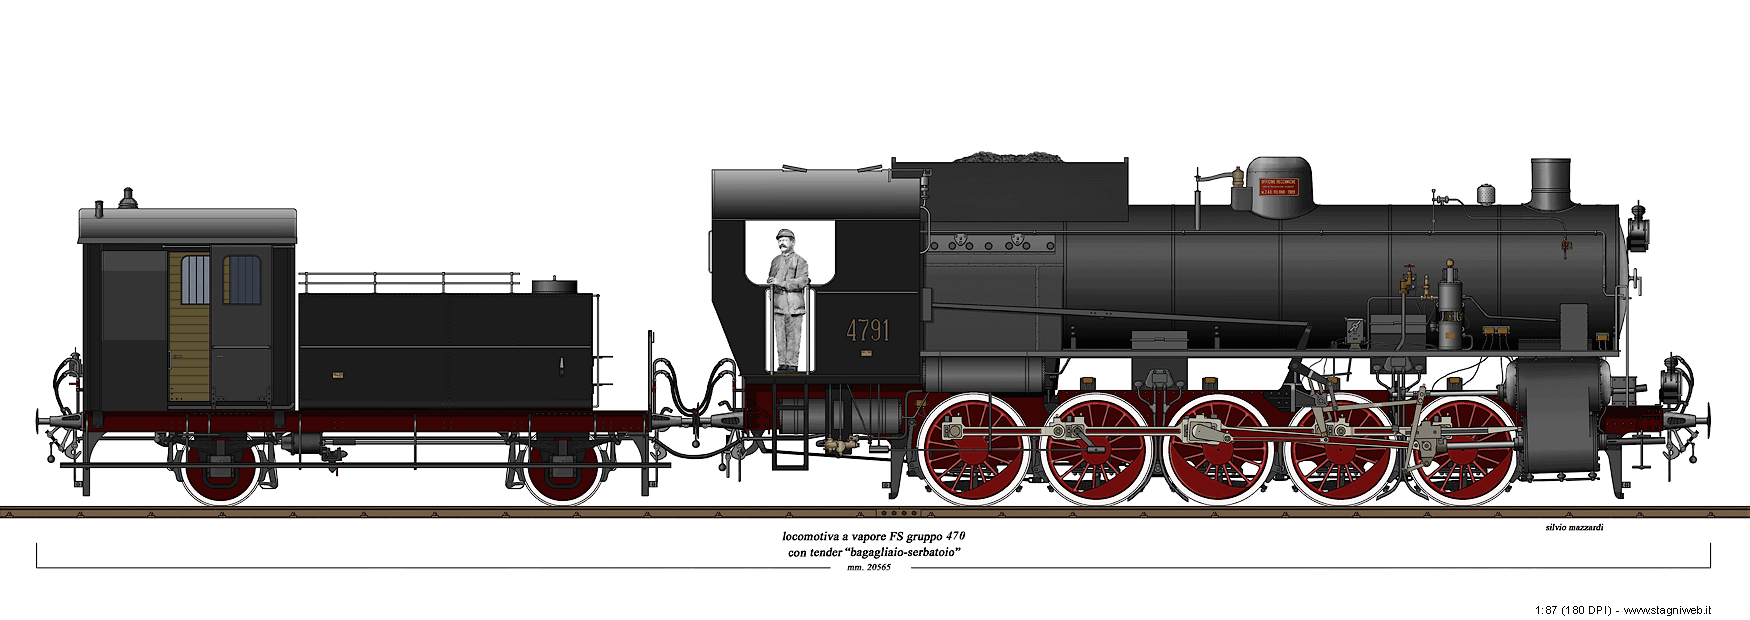 Locomotive a vapore con tender separato - Gr. 470